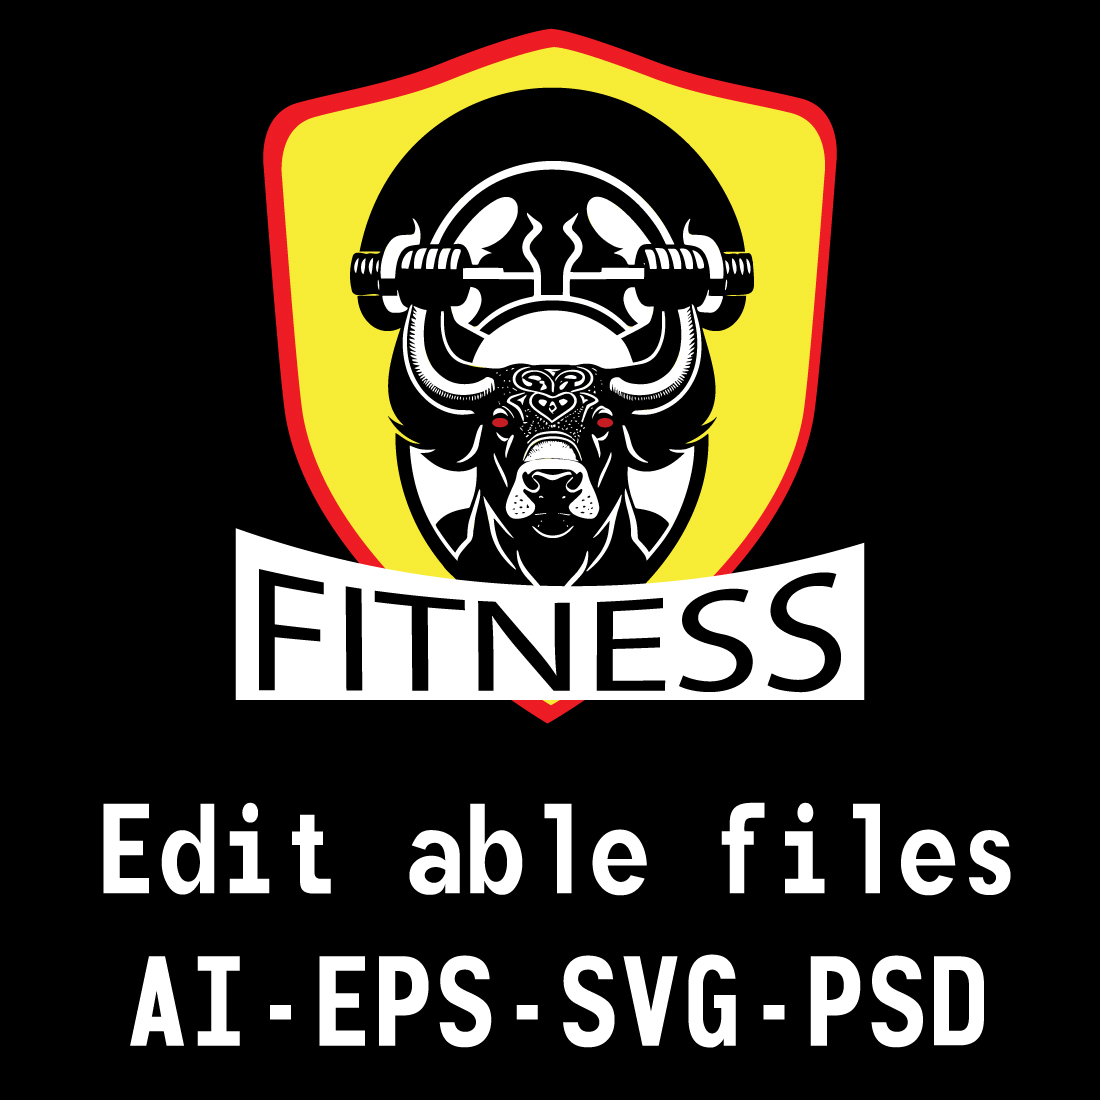 Bull fitness logo cover image.